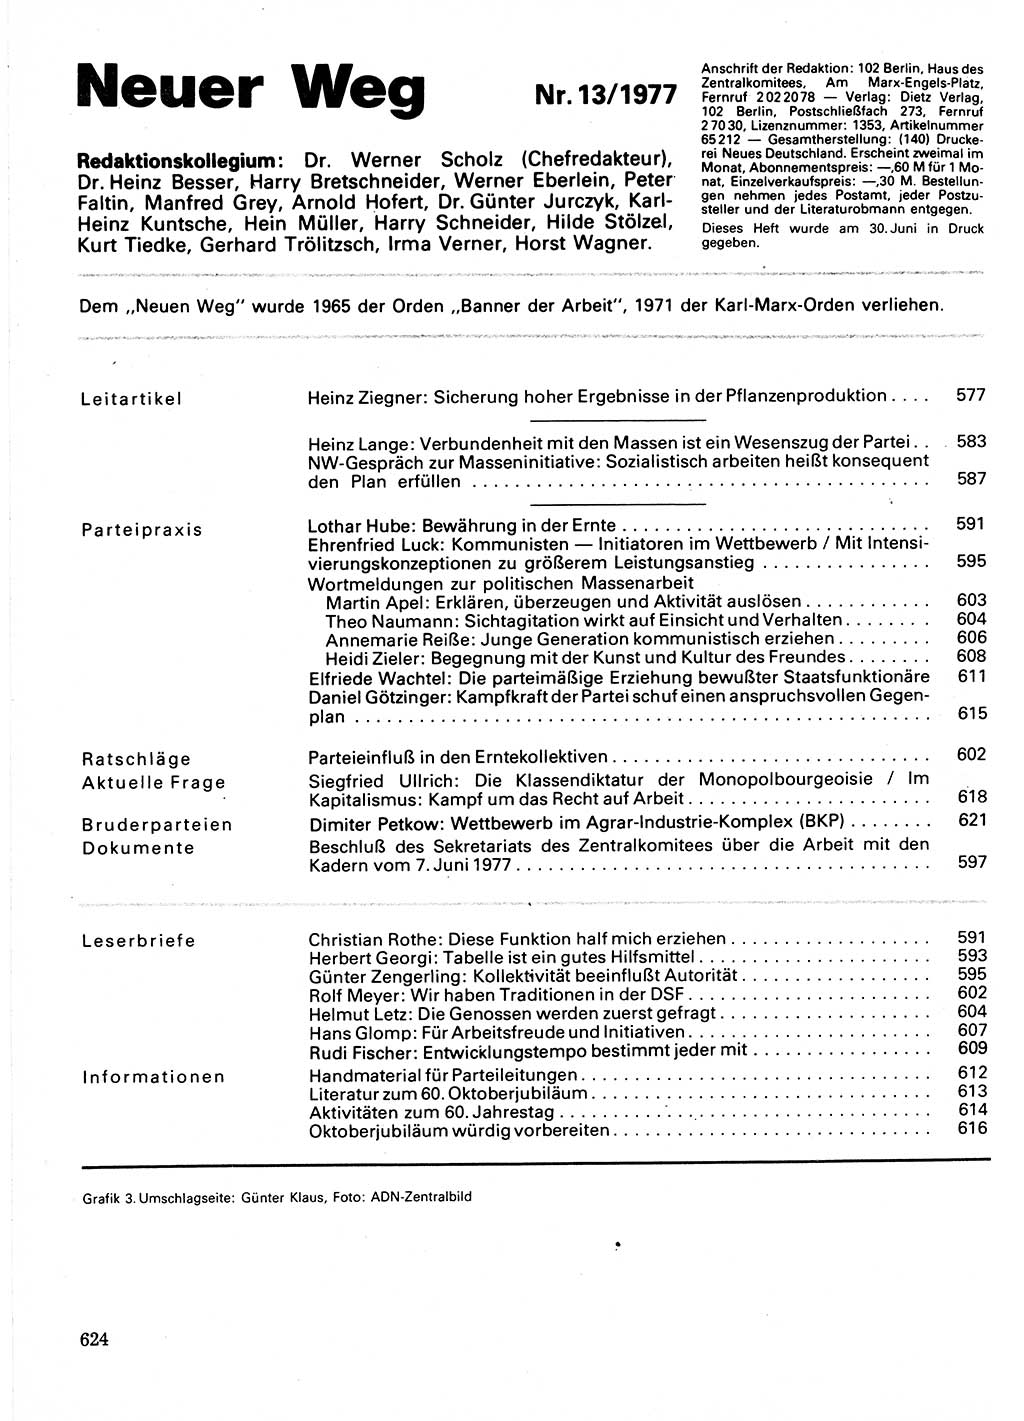 Neuer Weg (NW), Organ des Zentralkomitees (ZK) der SED (Sozialistische Einheitspartei Deutschlands) für Fragen des Parteilebens, 32. Jahrgang [Deutsche Demokratische Republik (DDR)] 1977, Seite 624 (NW ZK SED DDR 1977, S. 624)